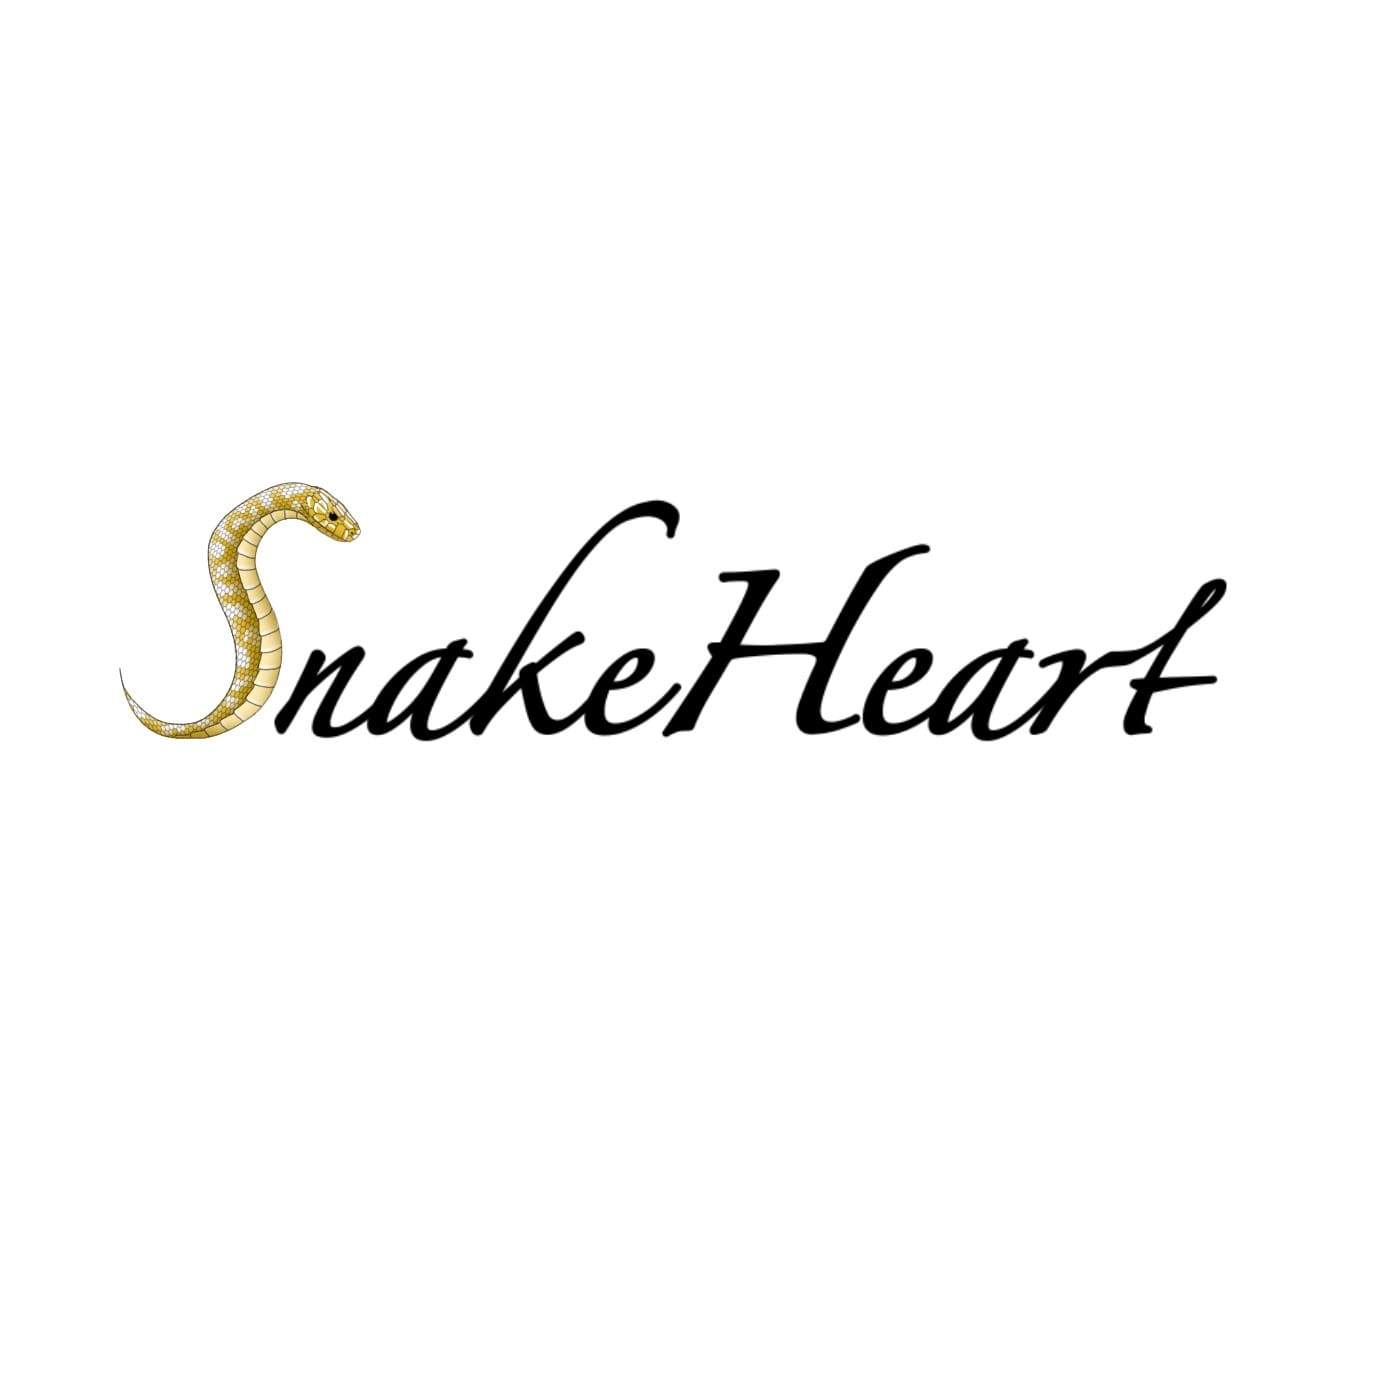 Snake Heart